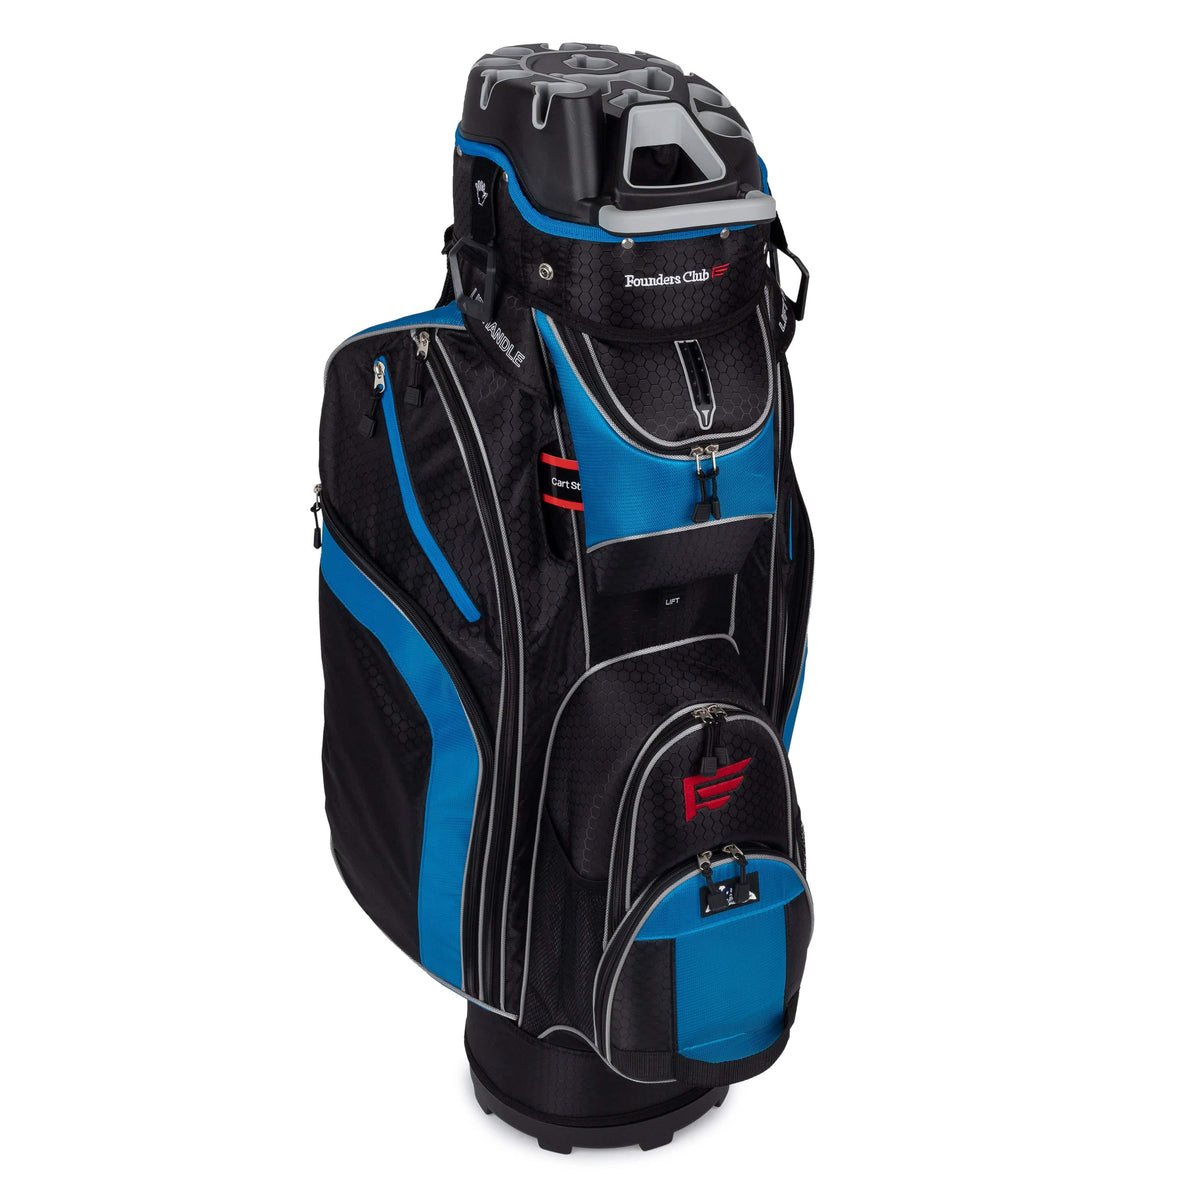 Founders Club 3rd Generation Premium Organizer 14 Way Golf Cart Bag - Aegean Blue